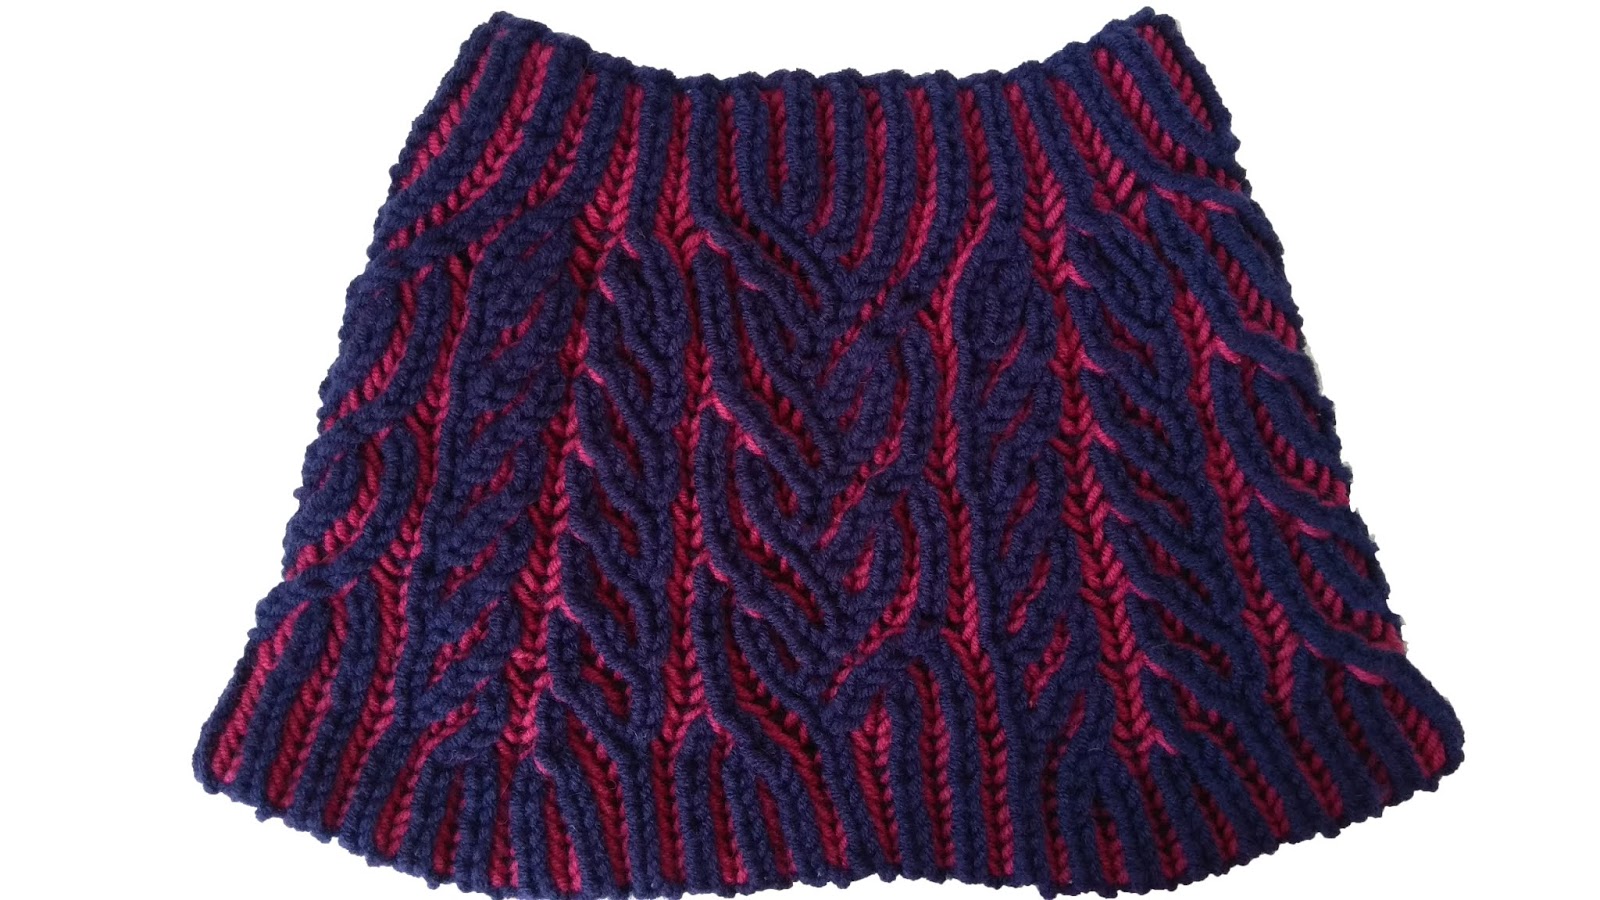 Interweave Cowl - Brioche Knitting